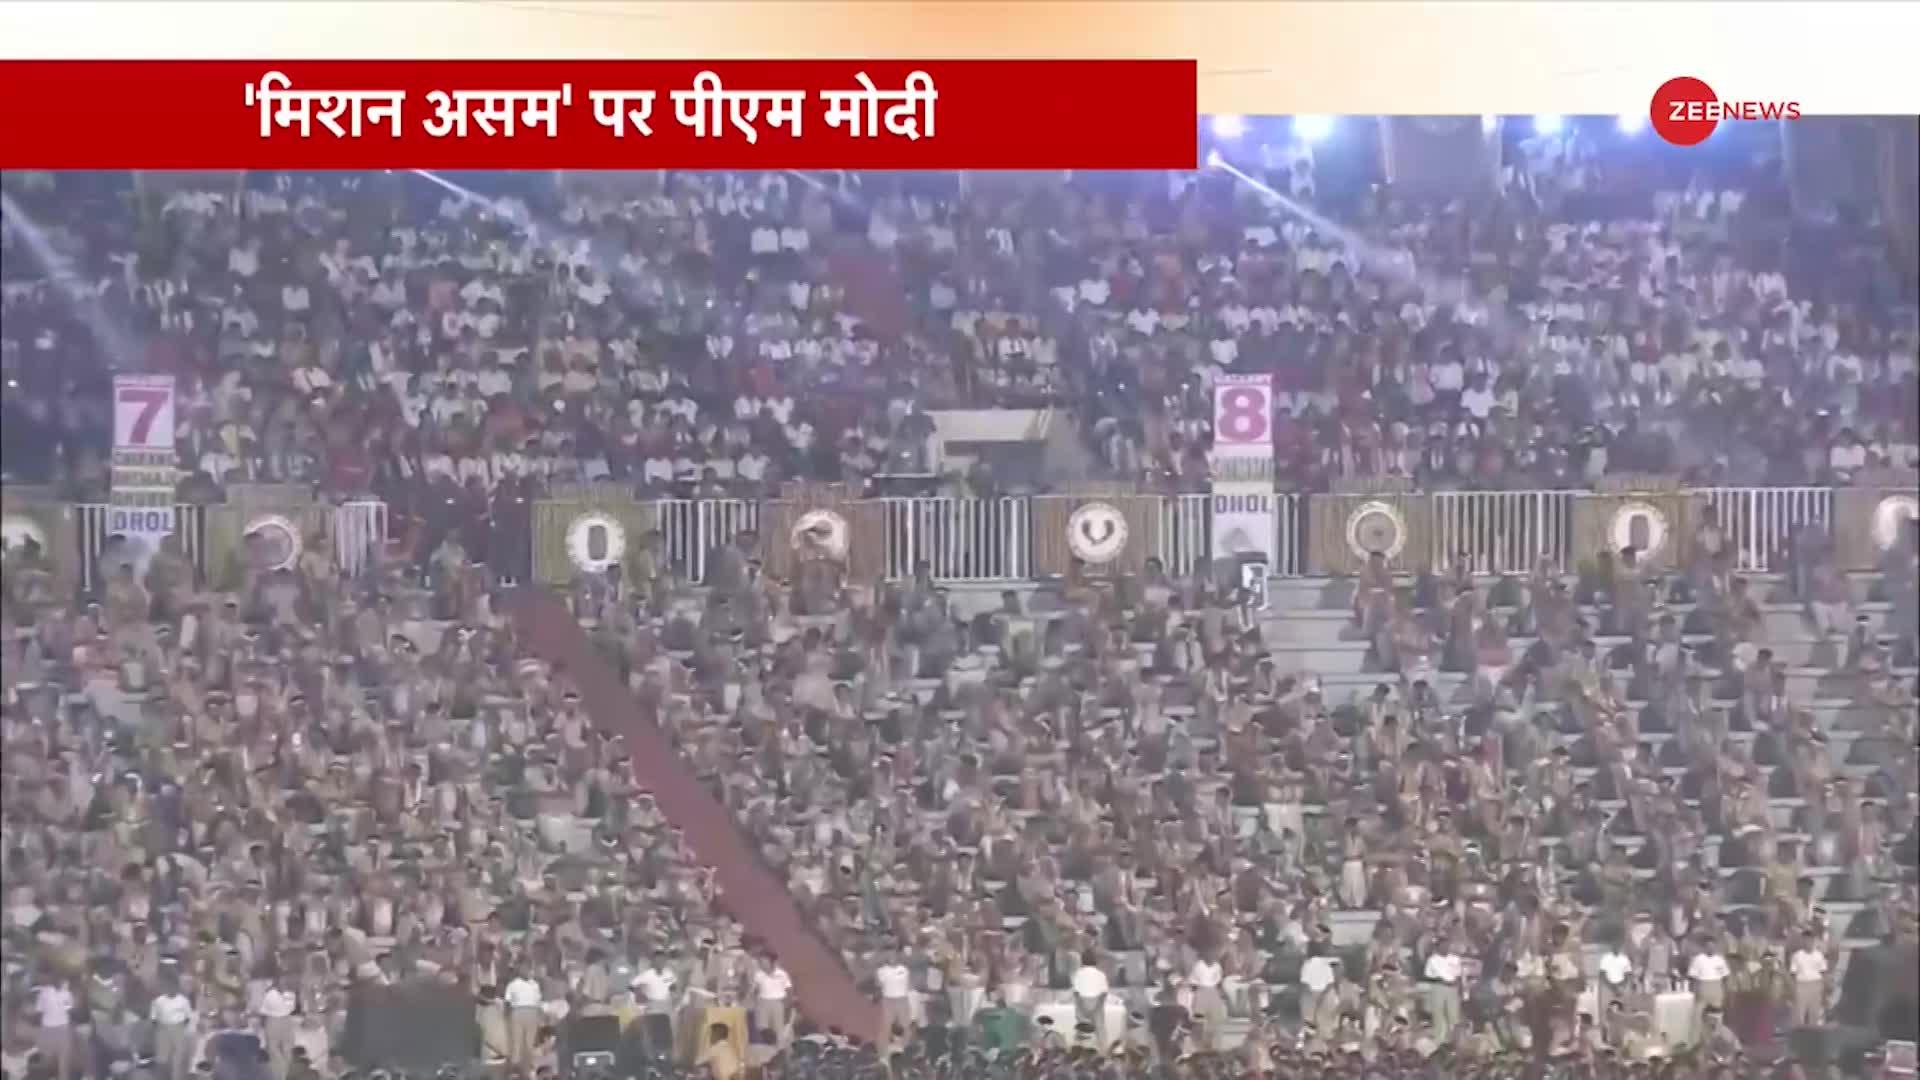 Deshhit: बिहू महोत्सव में PM Modi का संबोधन, असम की भाषा में संबोधन की शुरुआत